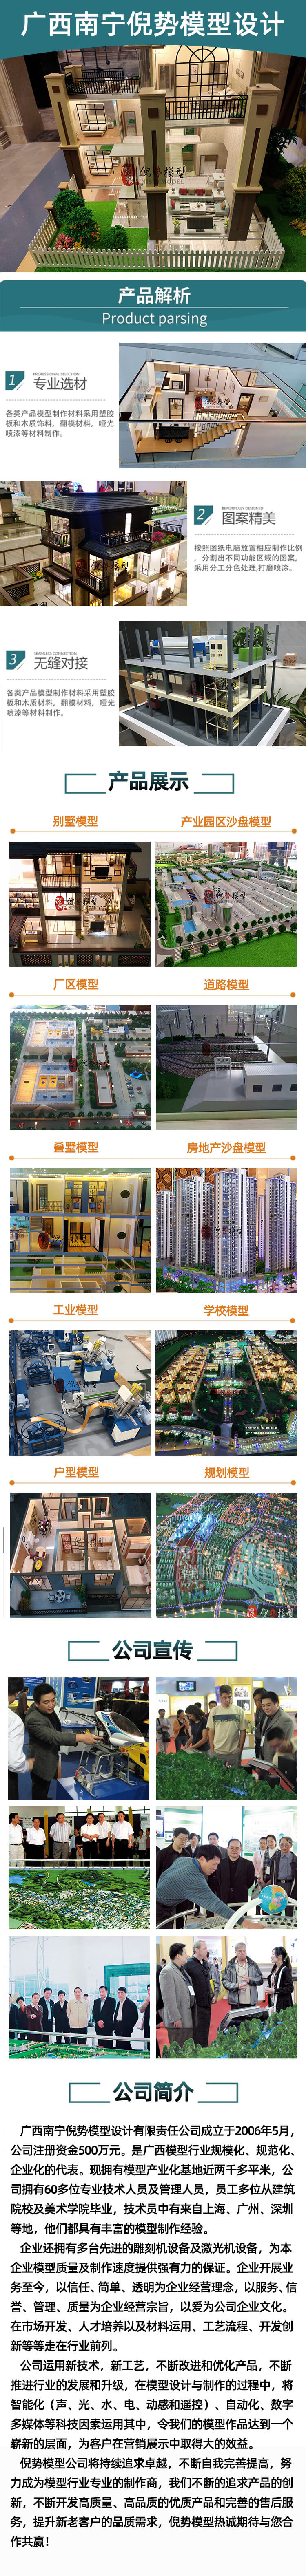 1127广西南宁倪势模型设计有限责任公司.jpg